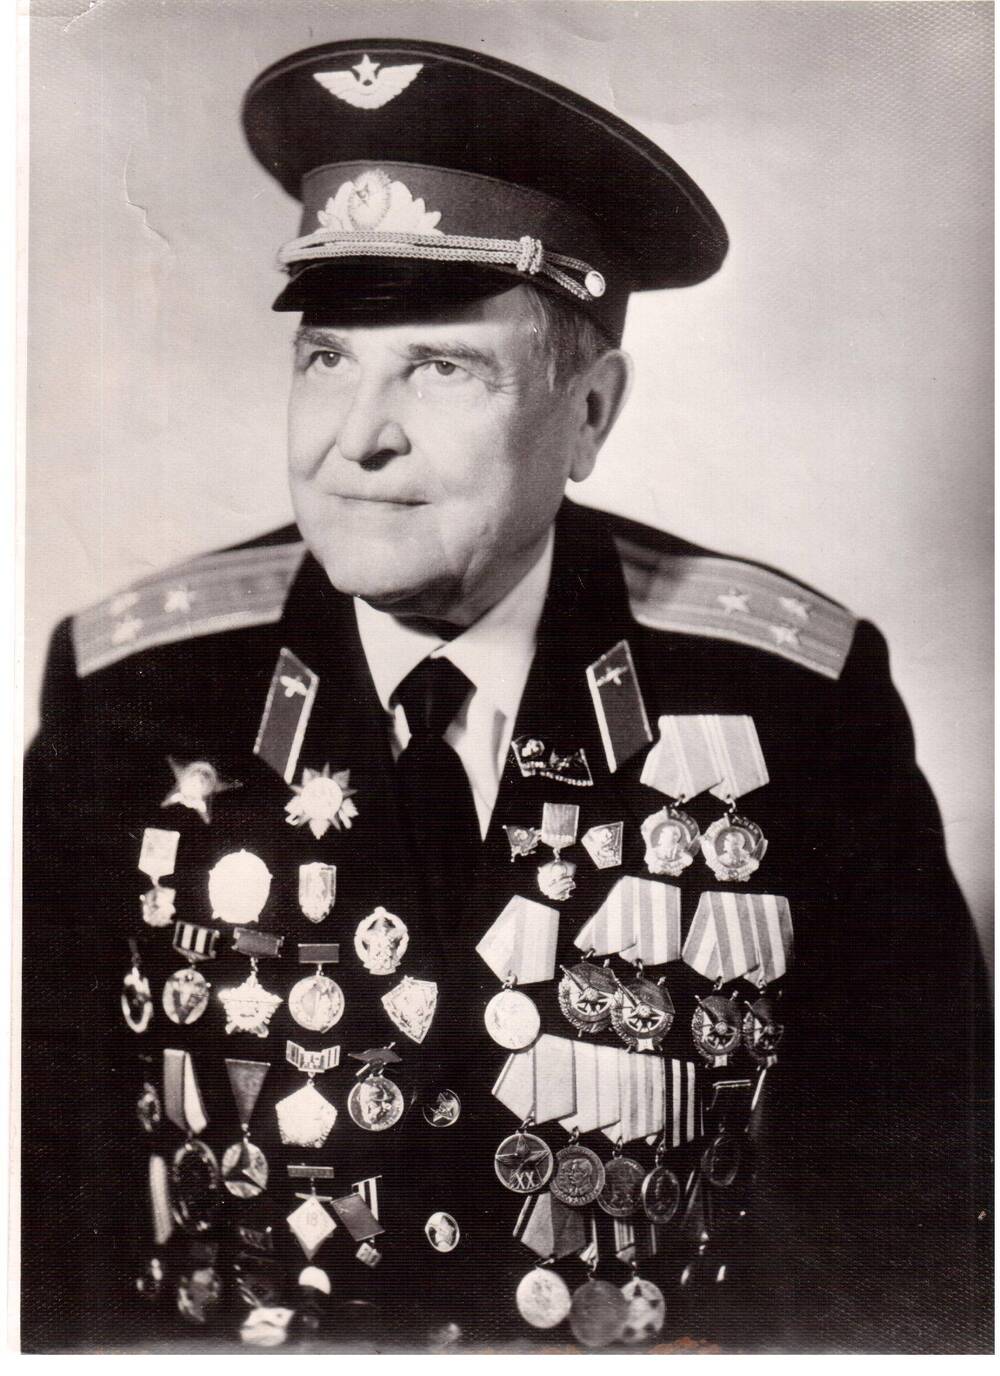 фотография. Артур Карлович Спрогис. бывший командир части особого назначения 9903. Не позднее 1980 г.